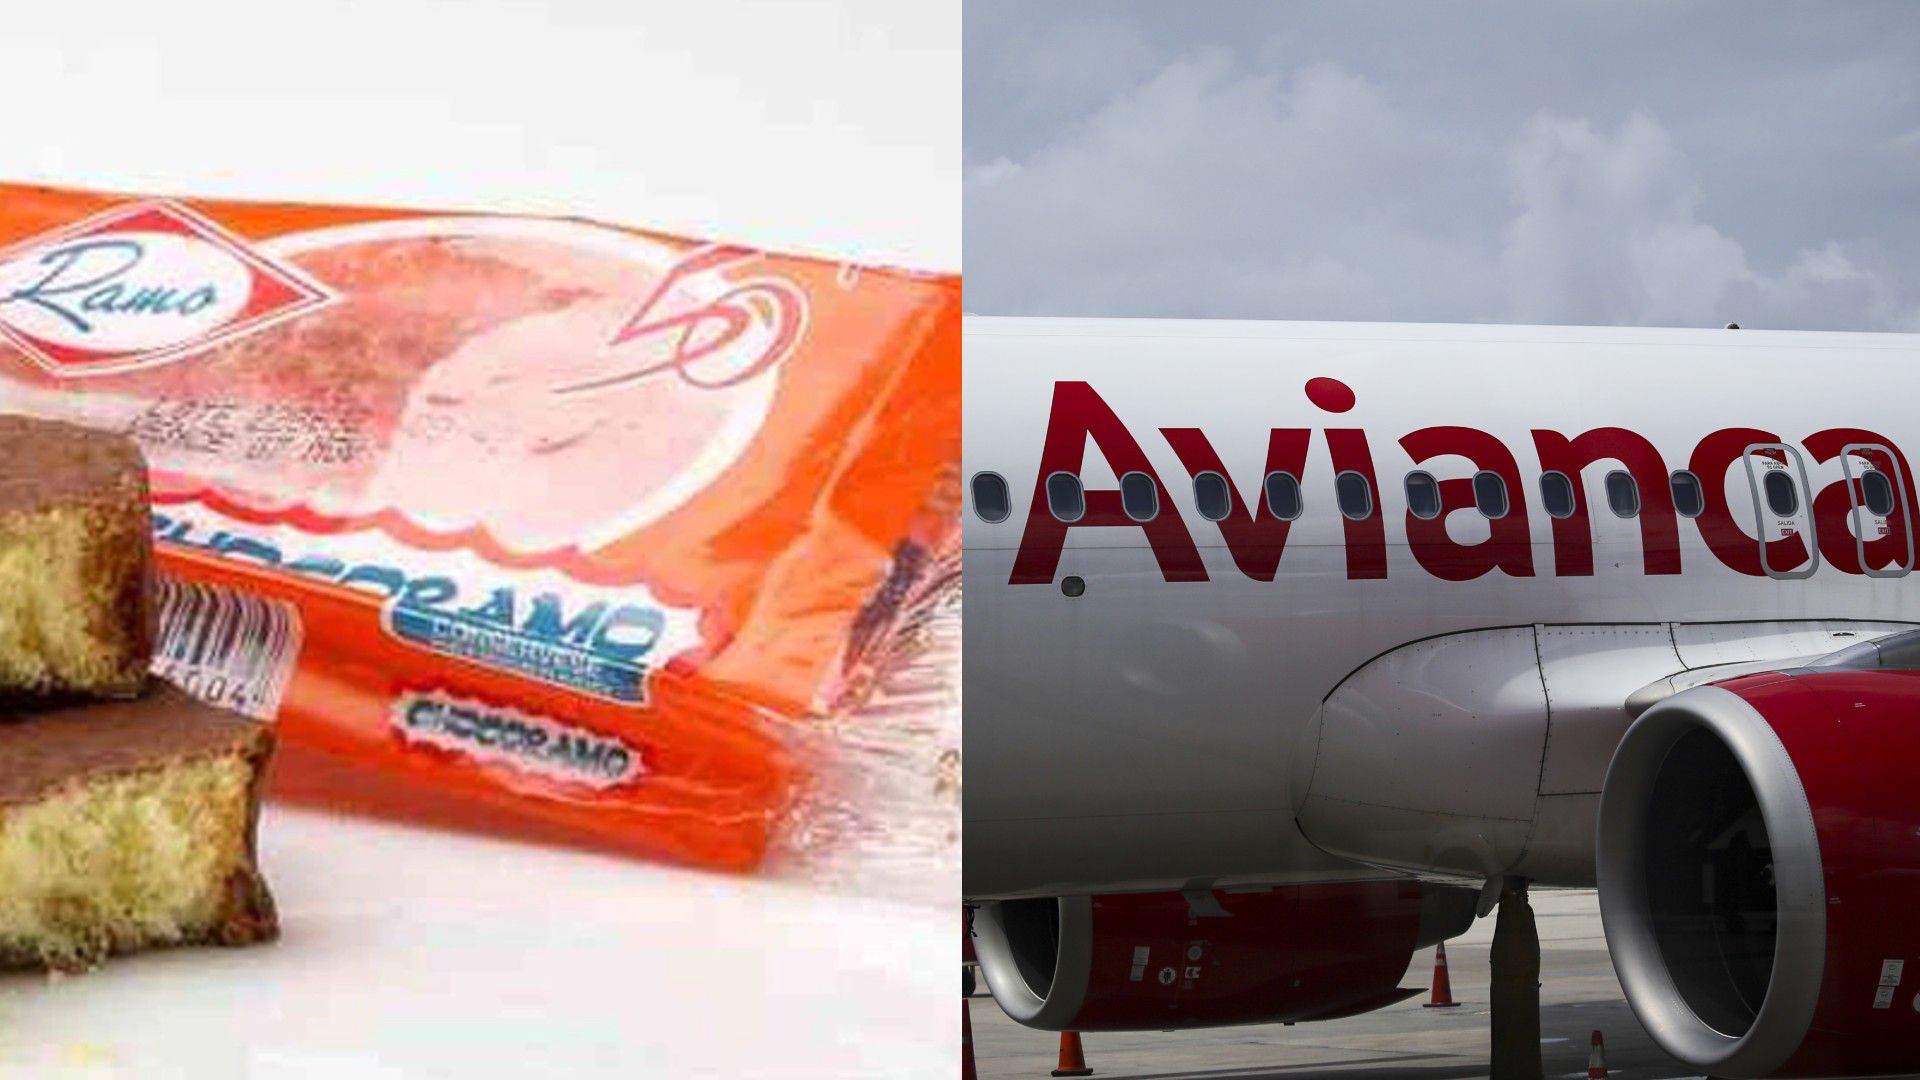 Se quejó por el costo de un dulce de chocolate en vuelo de Avianca y esto le respondió la aerolínea